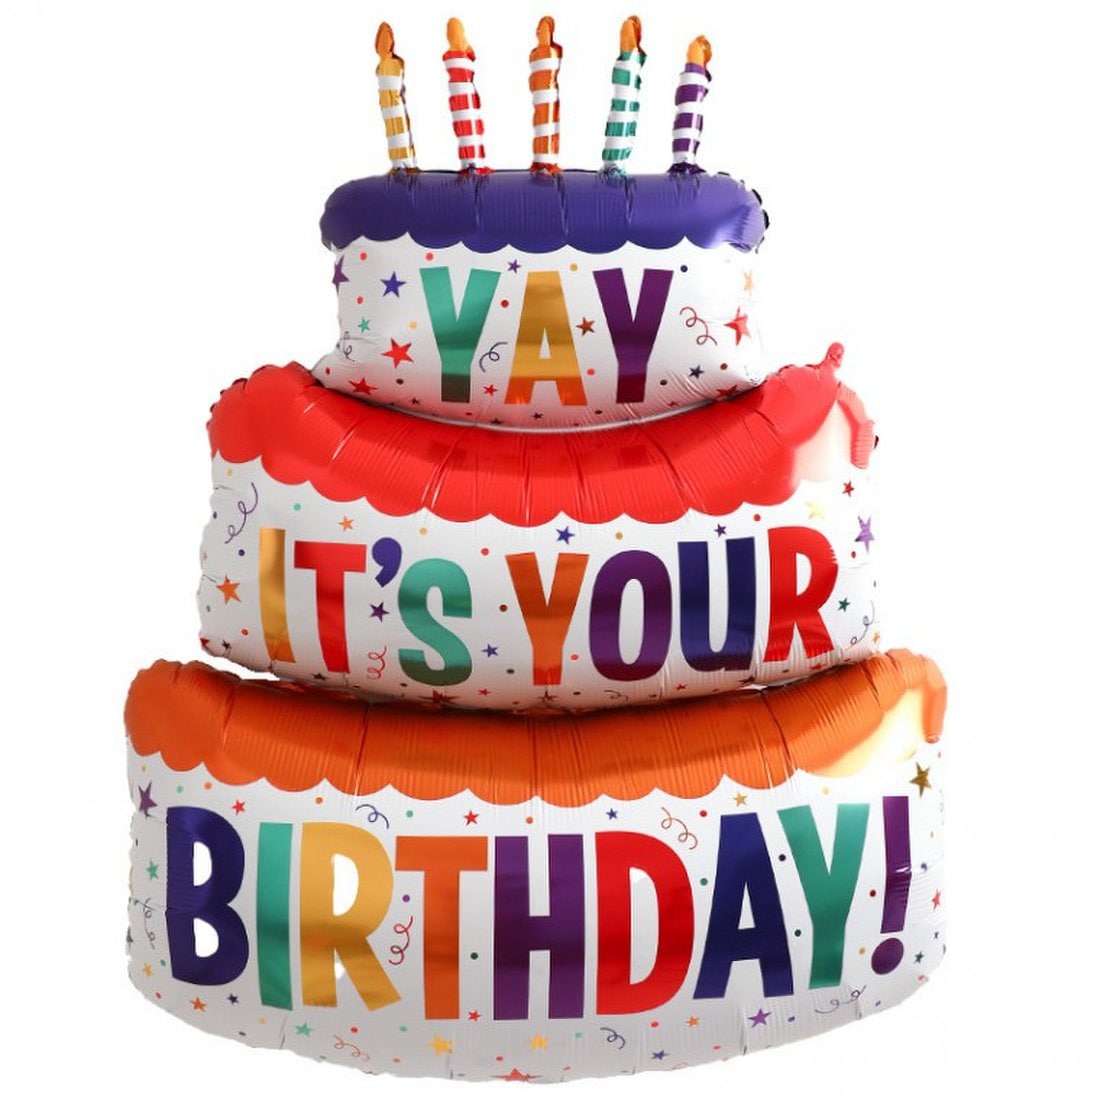 생일 케이크 풍선 초대형 대형 은박 3단케이크, 신세계적 쇼핑포털 Ssg.Com